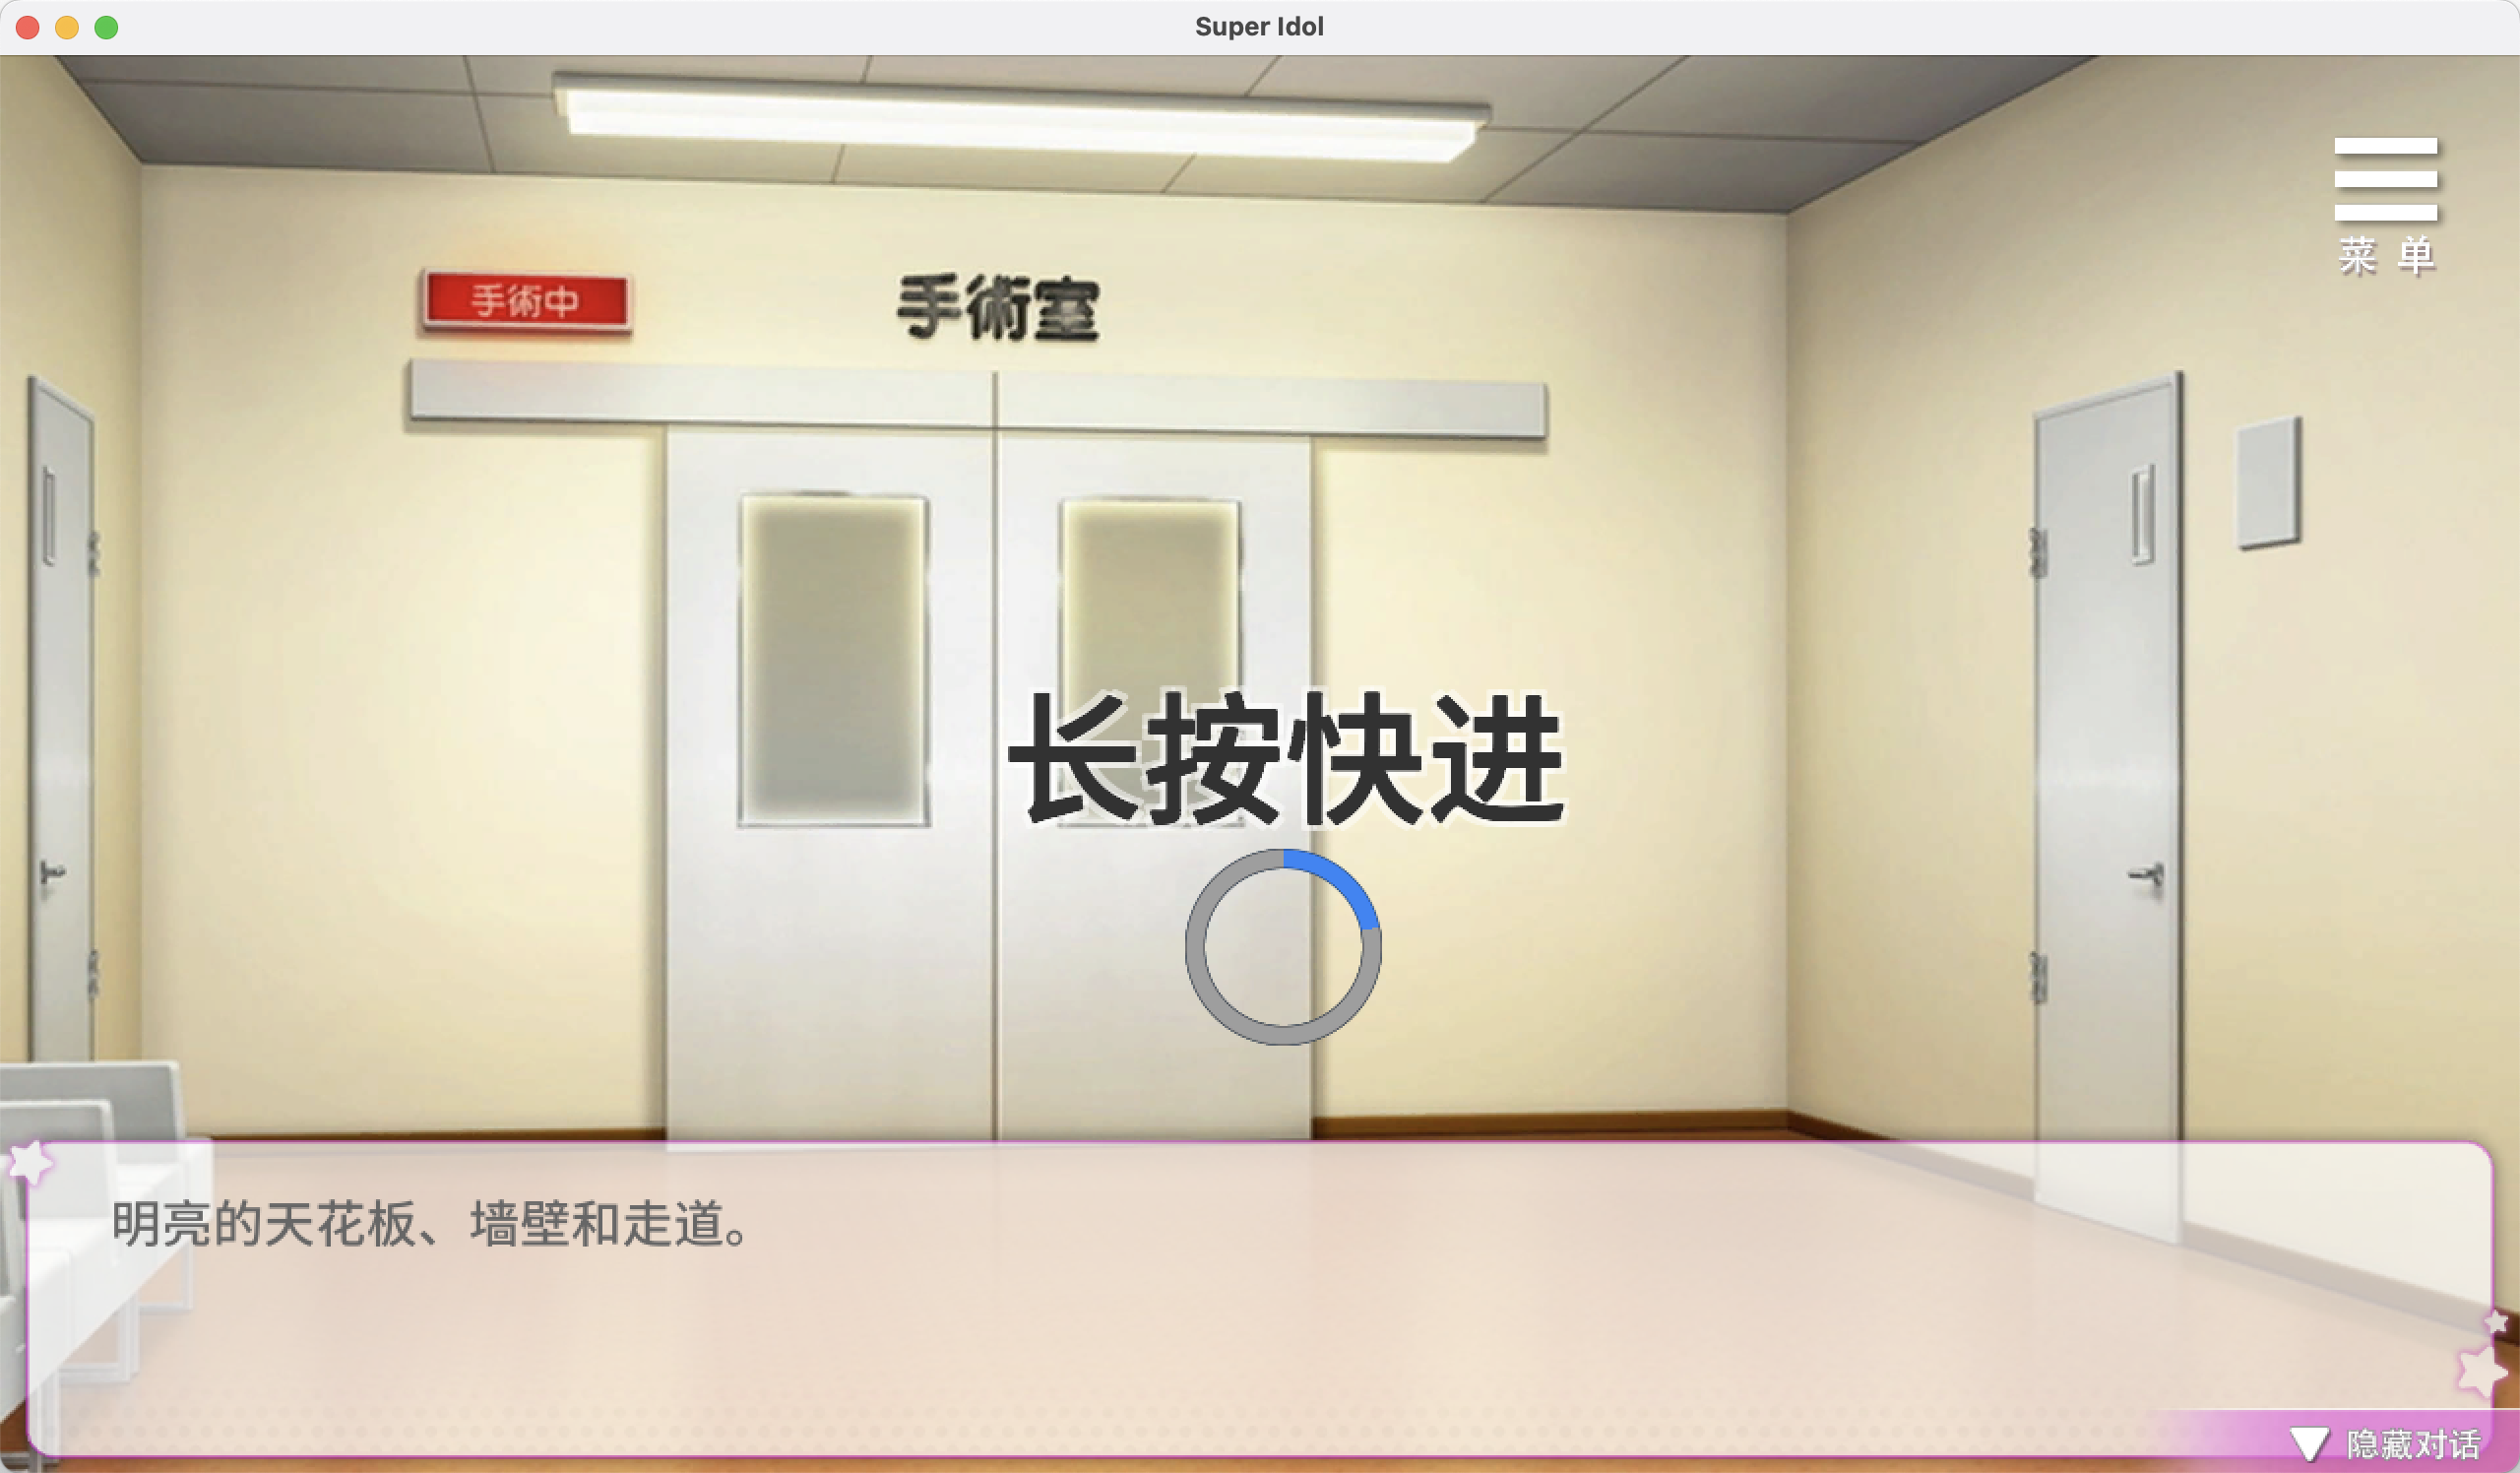 超级偶像 for Mac Super Idol v1.21a 中文移植版 含DLC 苹果电脑